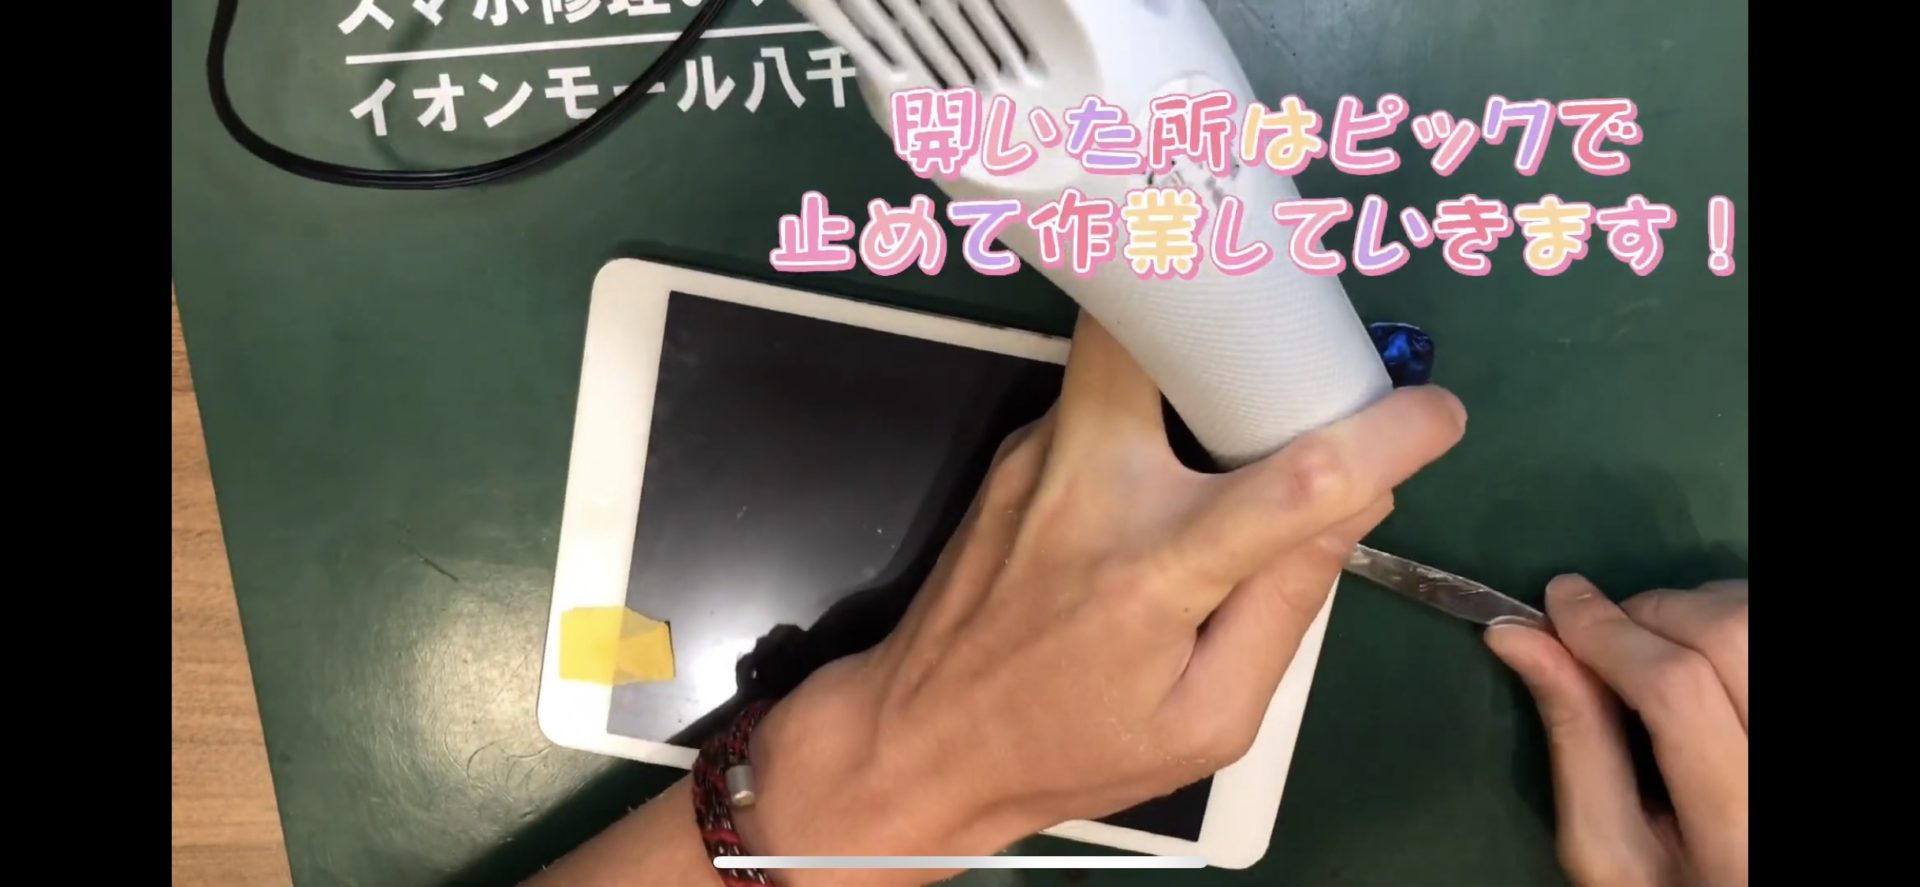 千葉県八千代市でiPhone修理のEyeSmartのiPad miniバッテリー交換修理画像2